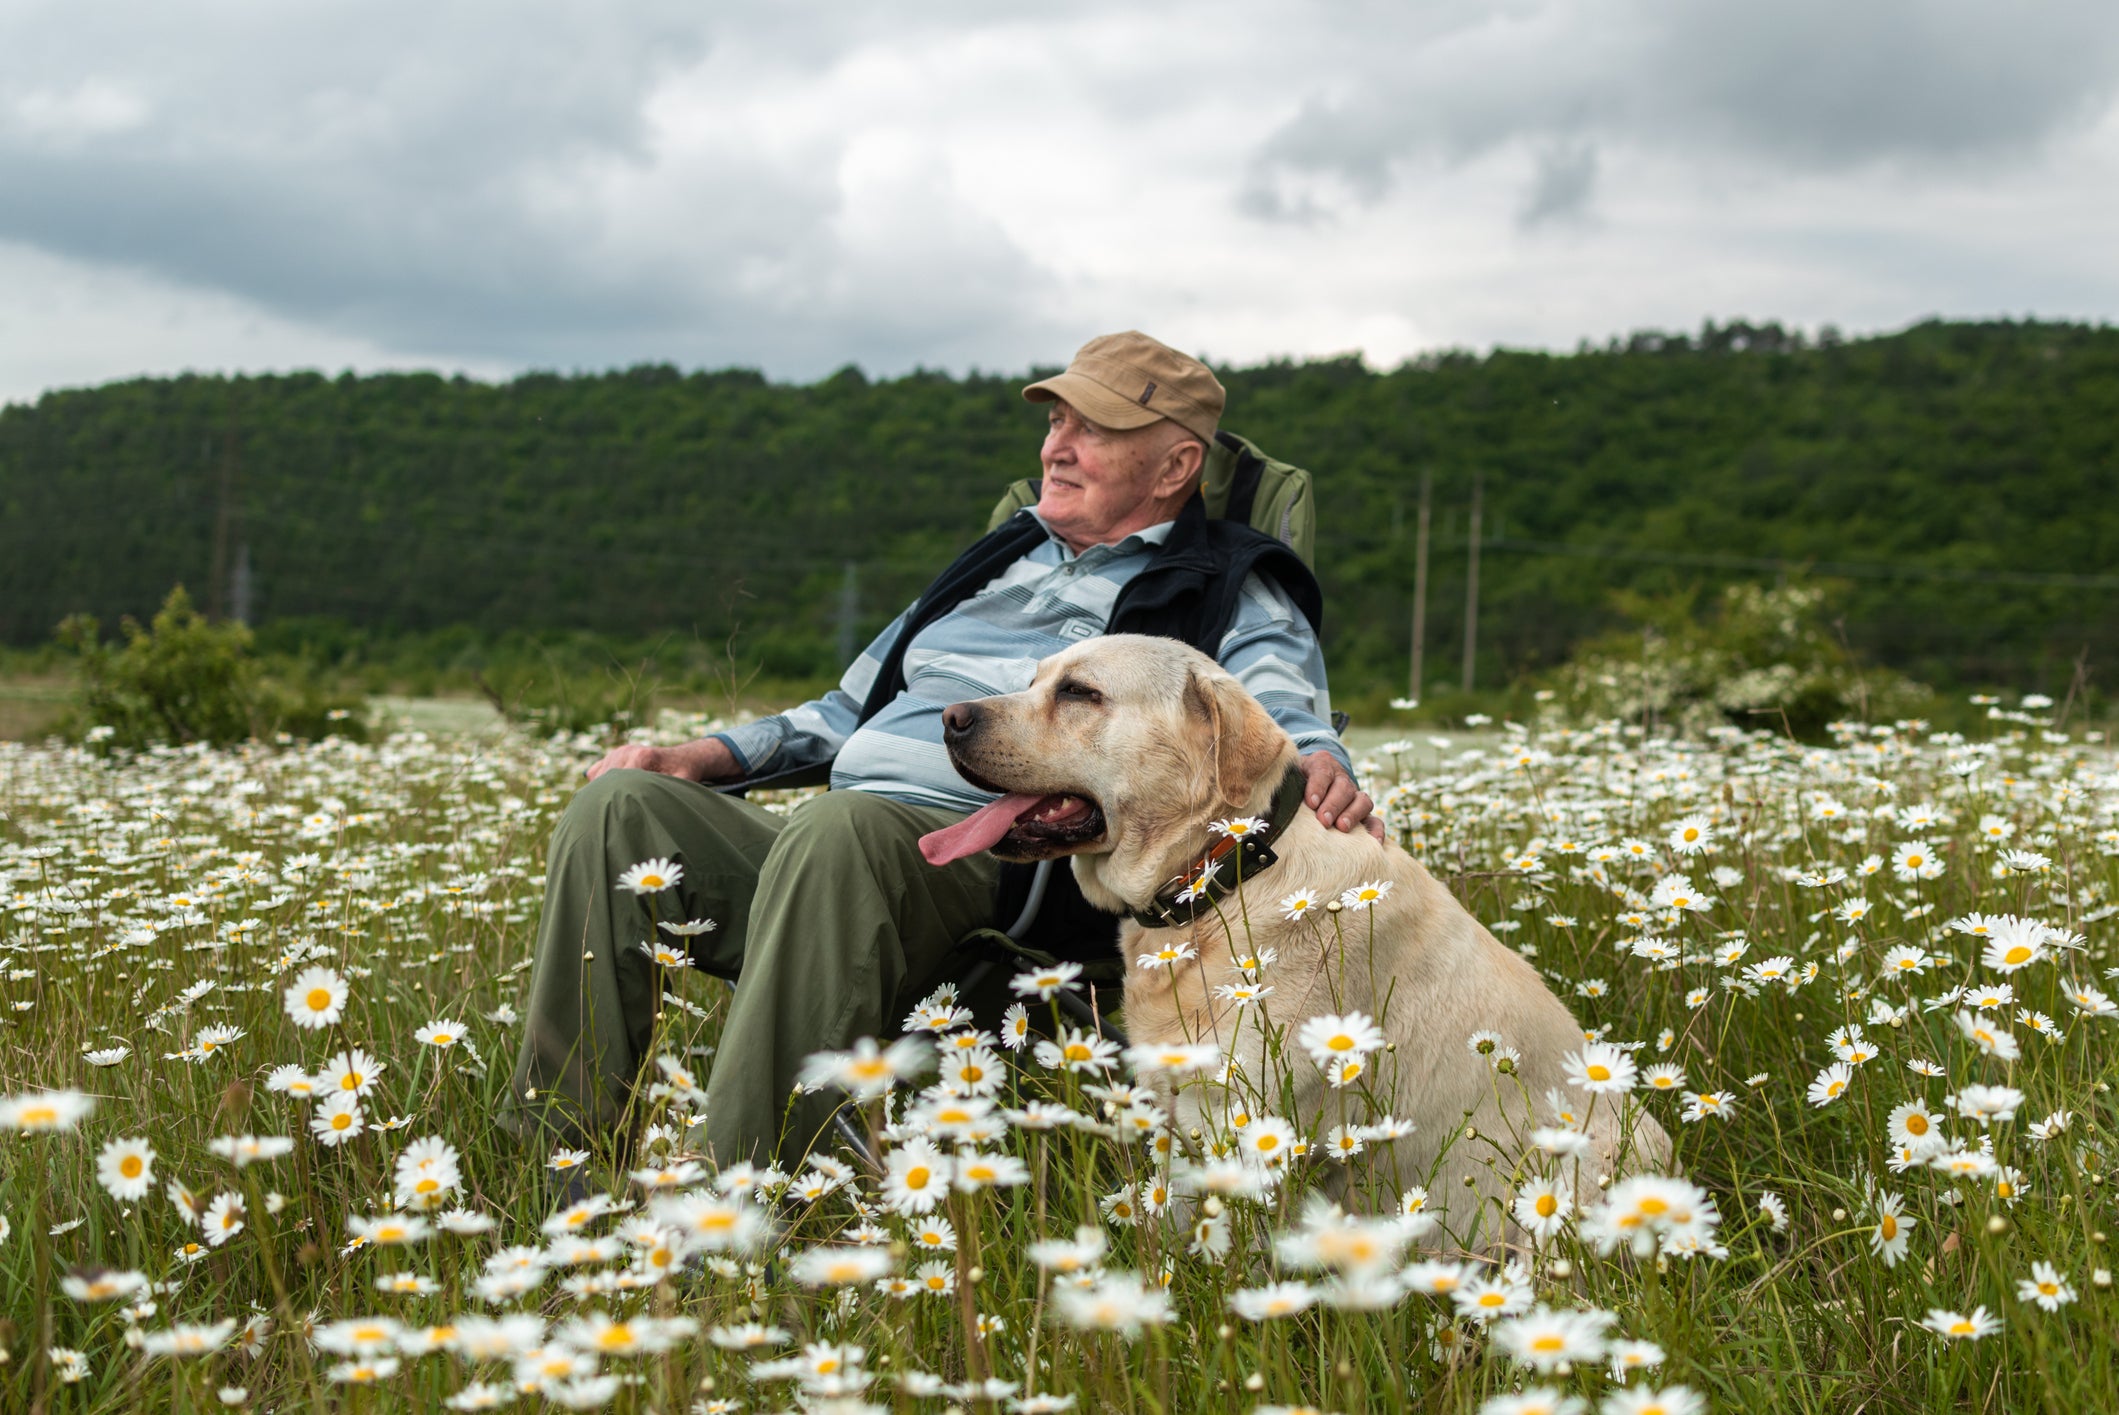 Humano idoso e seu cachorro velho sentados no meio de campo repleto de flores brancas